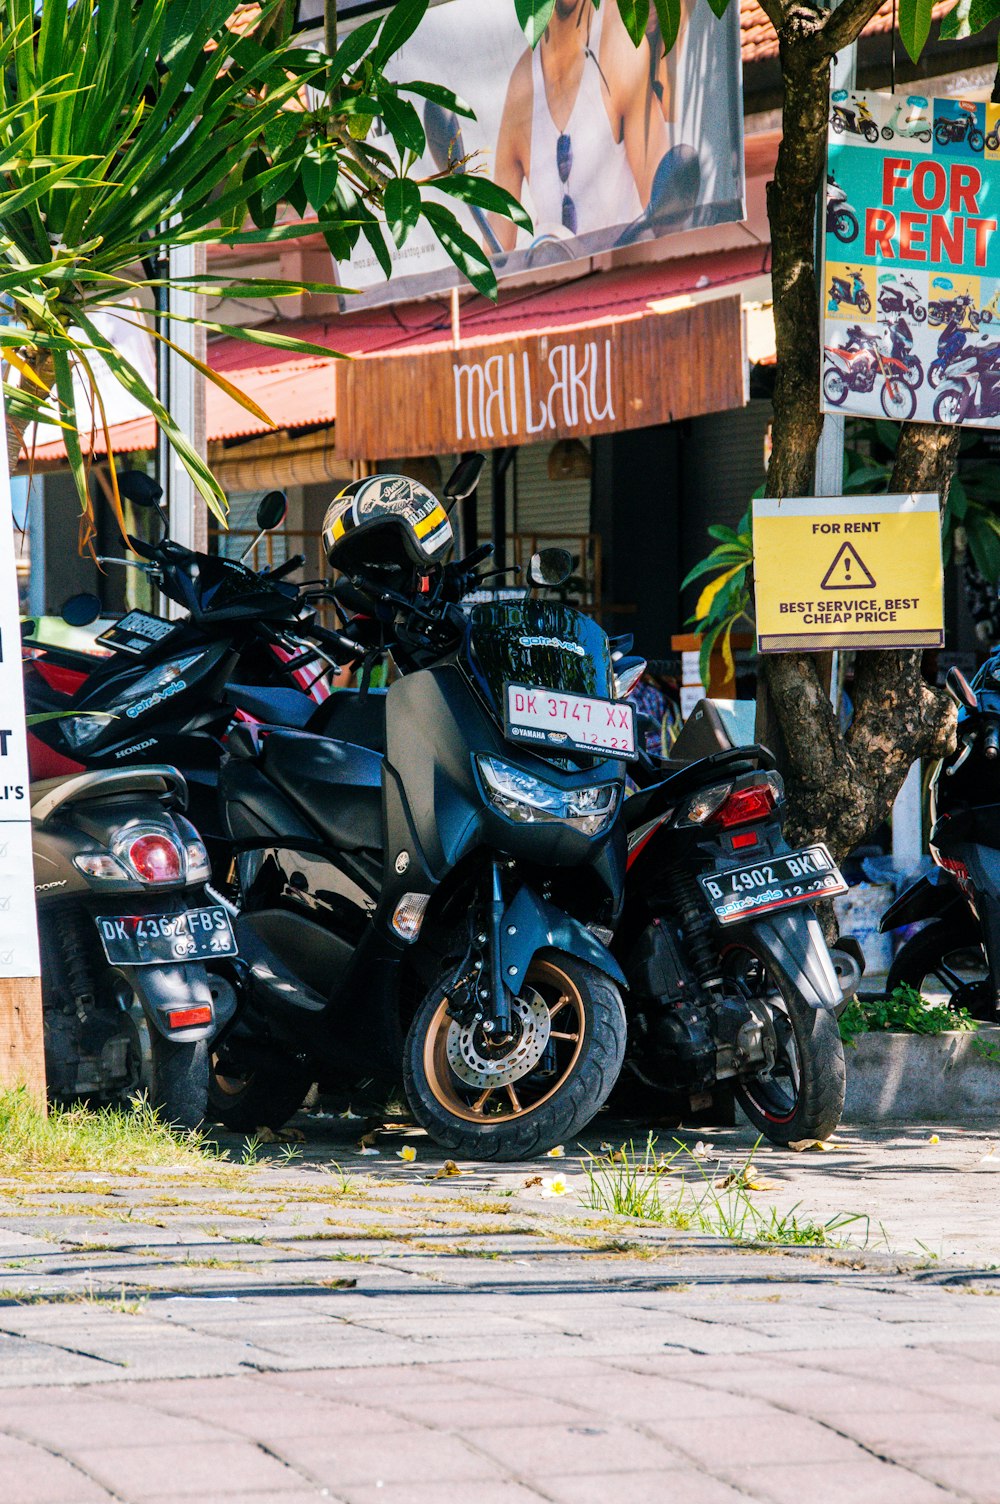 un gruppo di motociclette parcheggiate una accanto all'altra